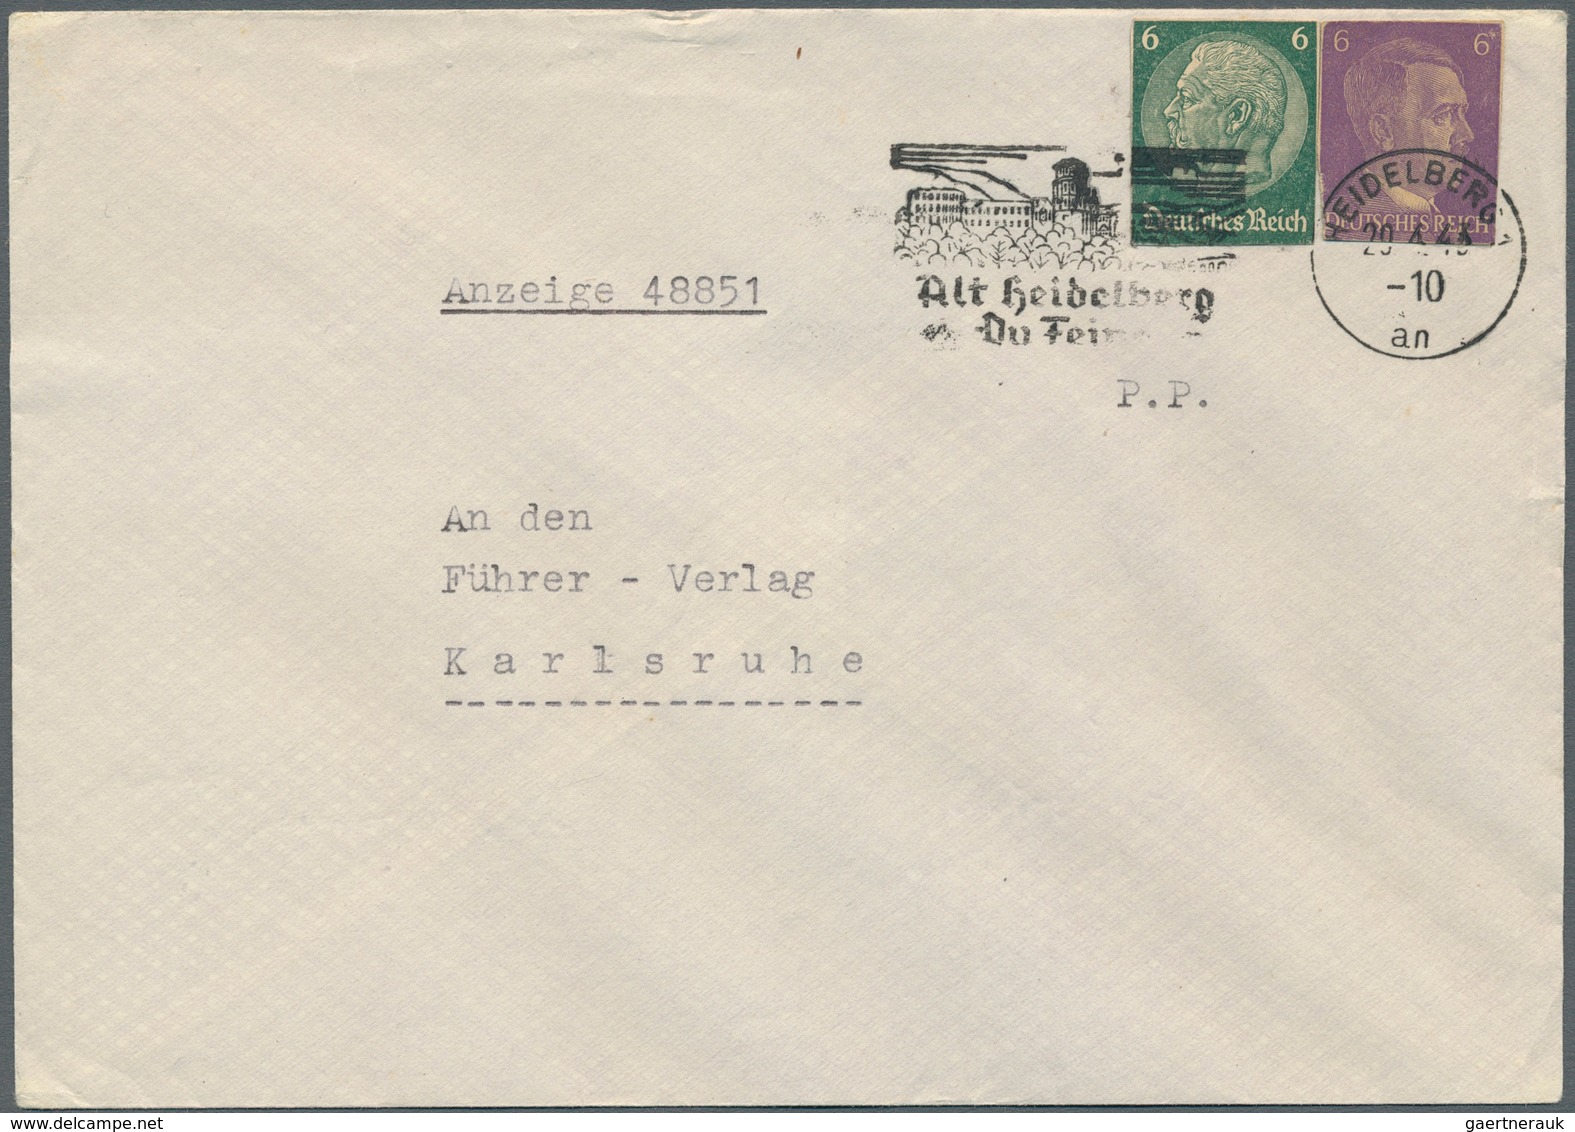 31620 Deutsches Reich - 3. Reich: 1933/1945, vielseitige Partie von ca. 250 Briefen, Karten und Ganzsachen